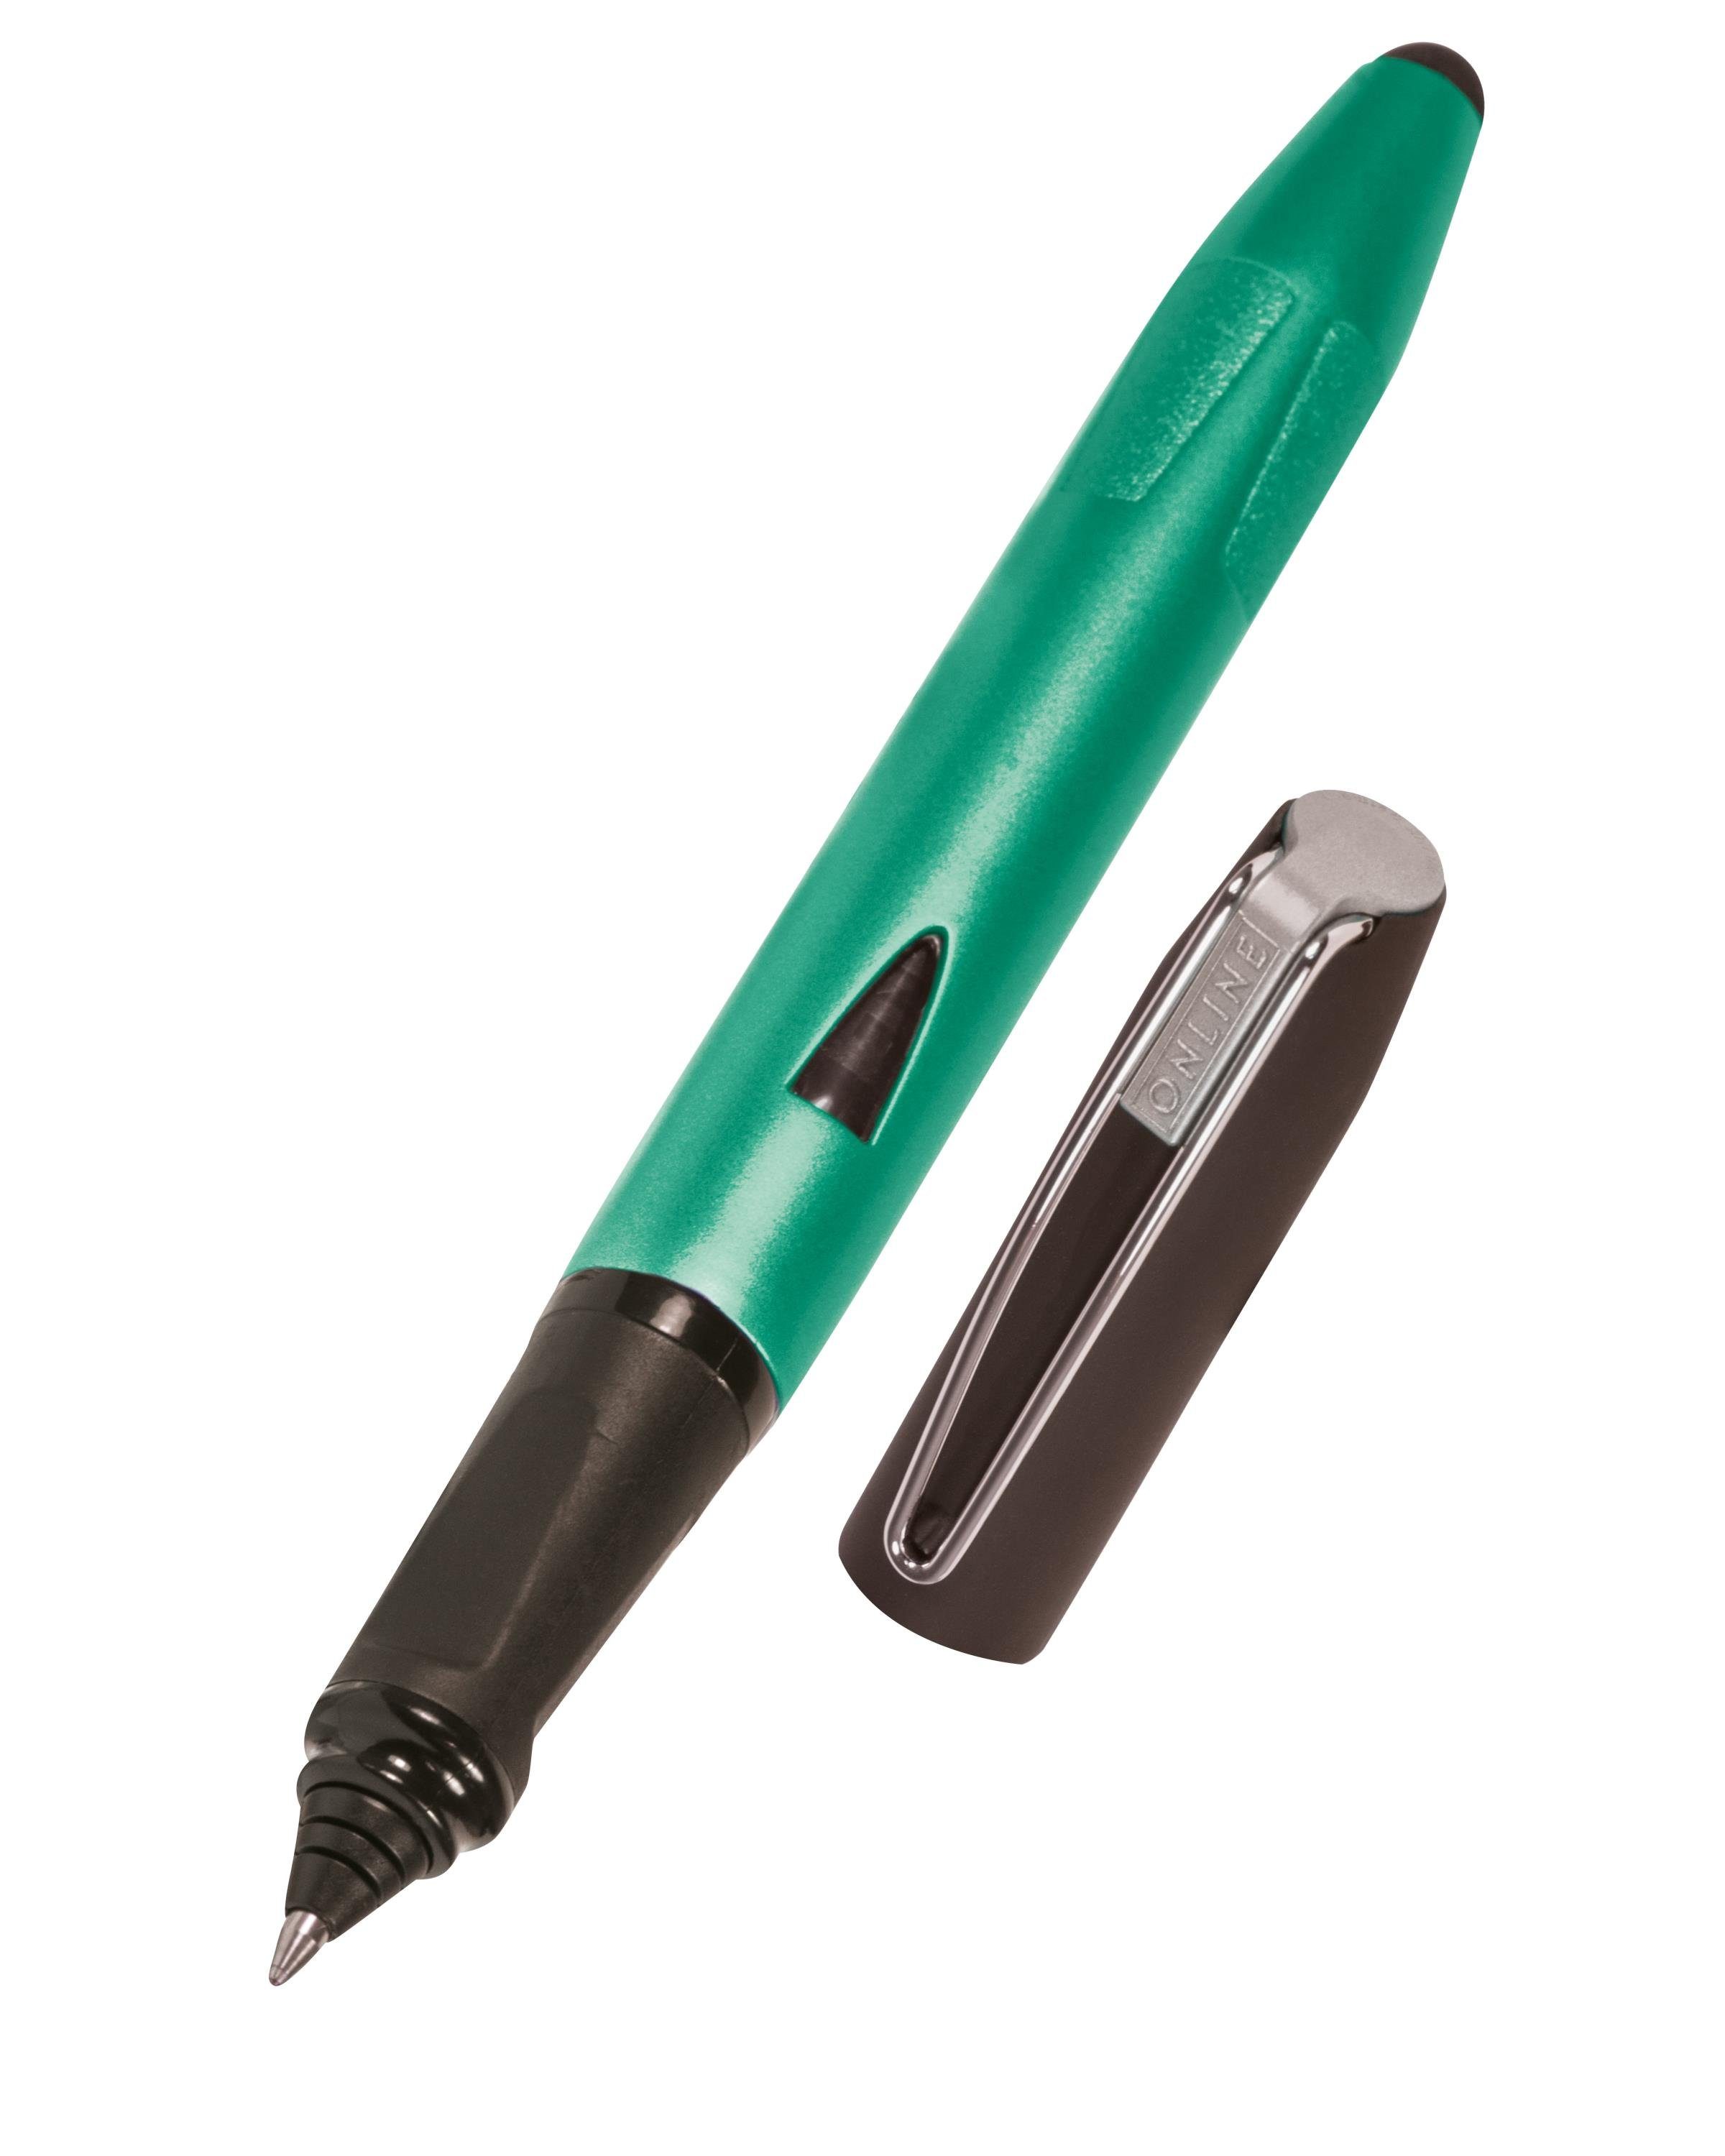 Online Switch ergonomisch, Schule, Pen ideal mit für Plus, Tintenroller Grün die Stylus-Tip